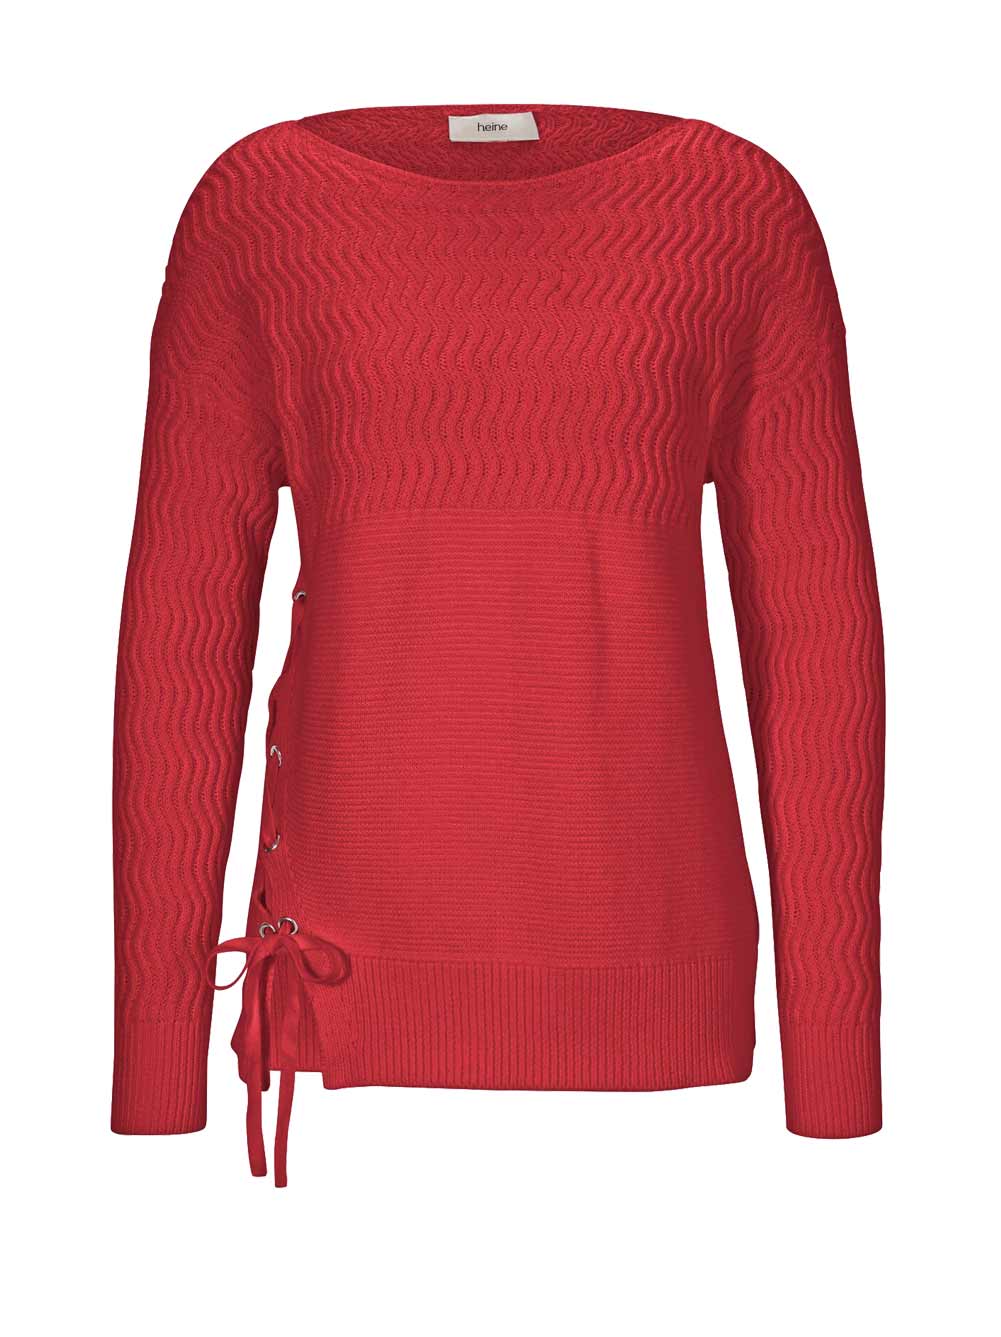 HEINE Damen Pullover mit Zierschnürung, rot